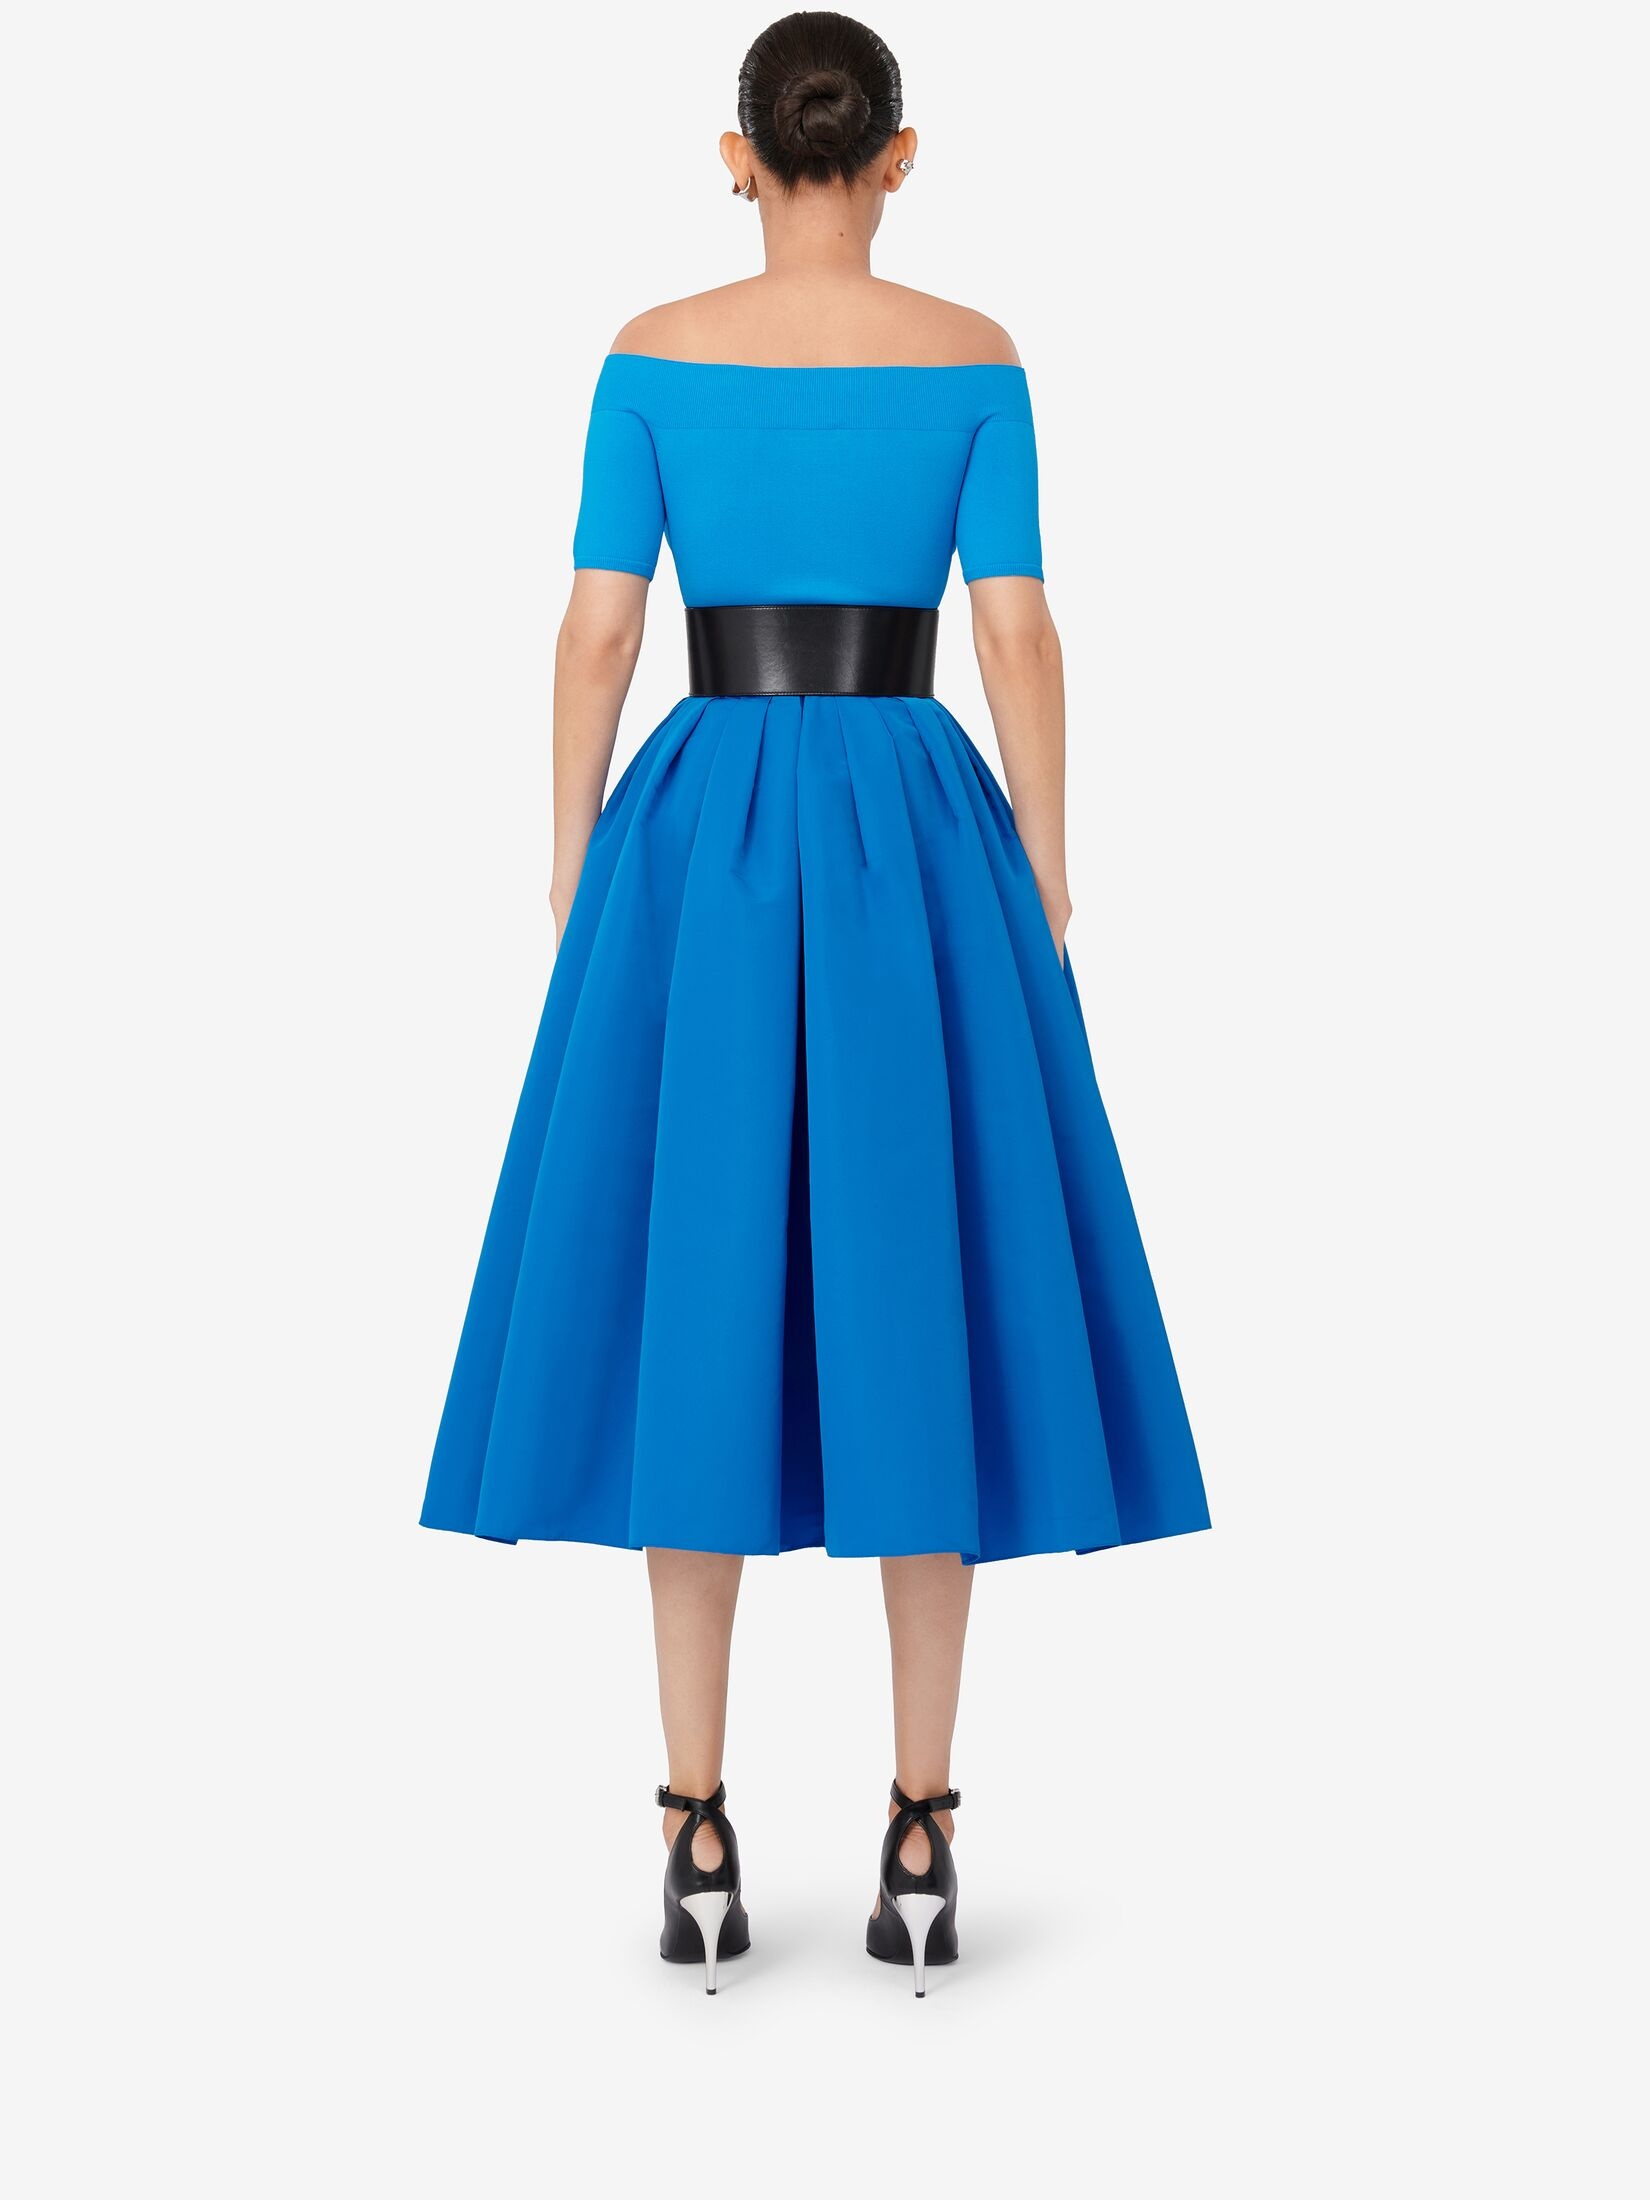 Women's Pleated Midi Skirt in Lapis Blue - 4